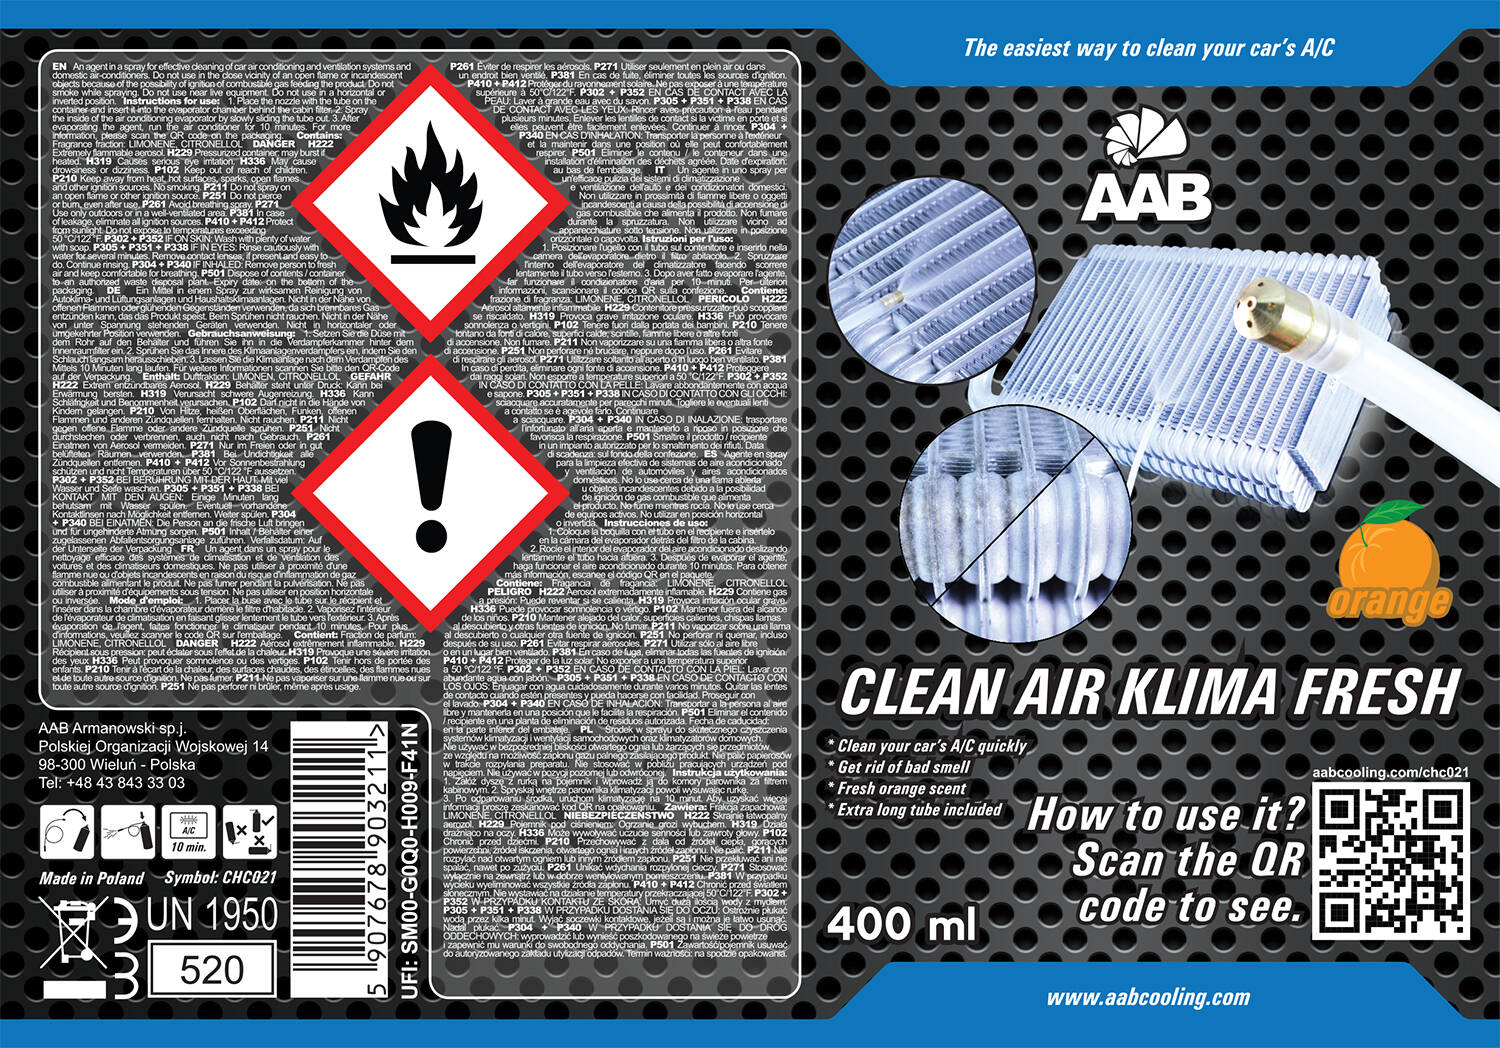 aab_clean_air_klima_fresh_400ml_dsc_1903_12